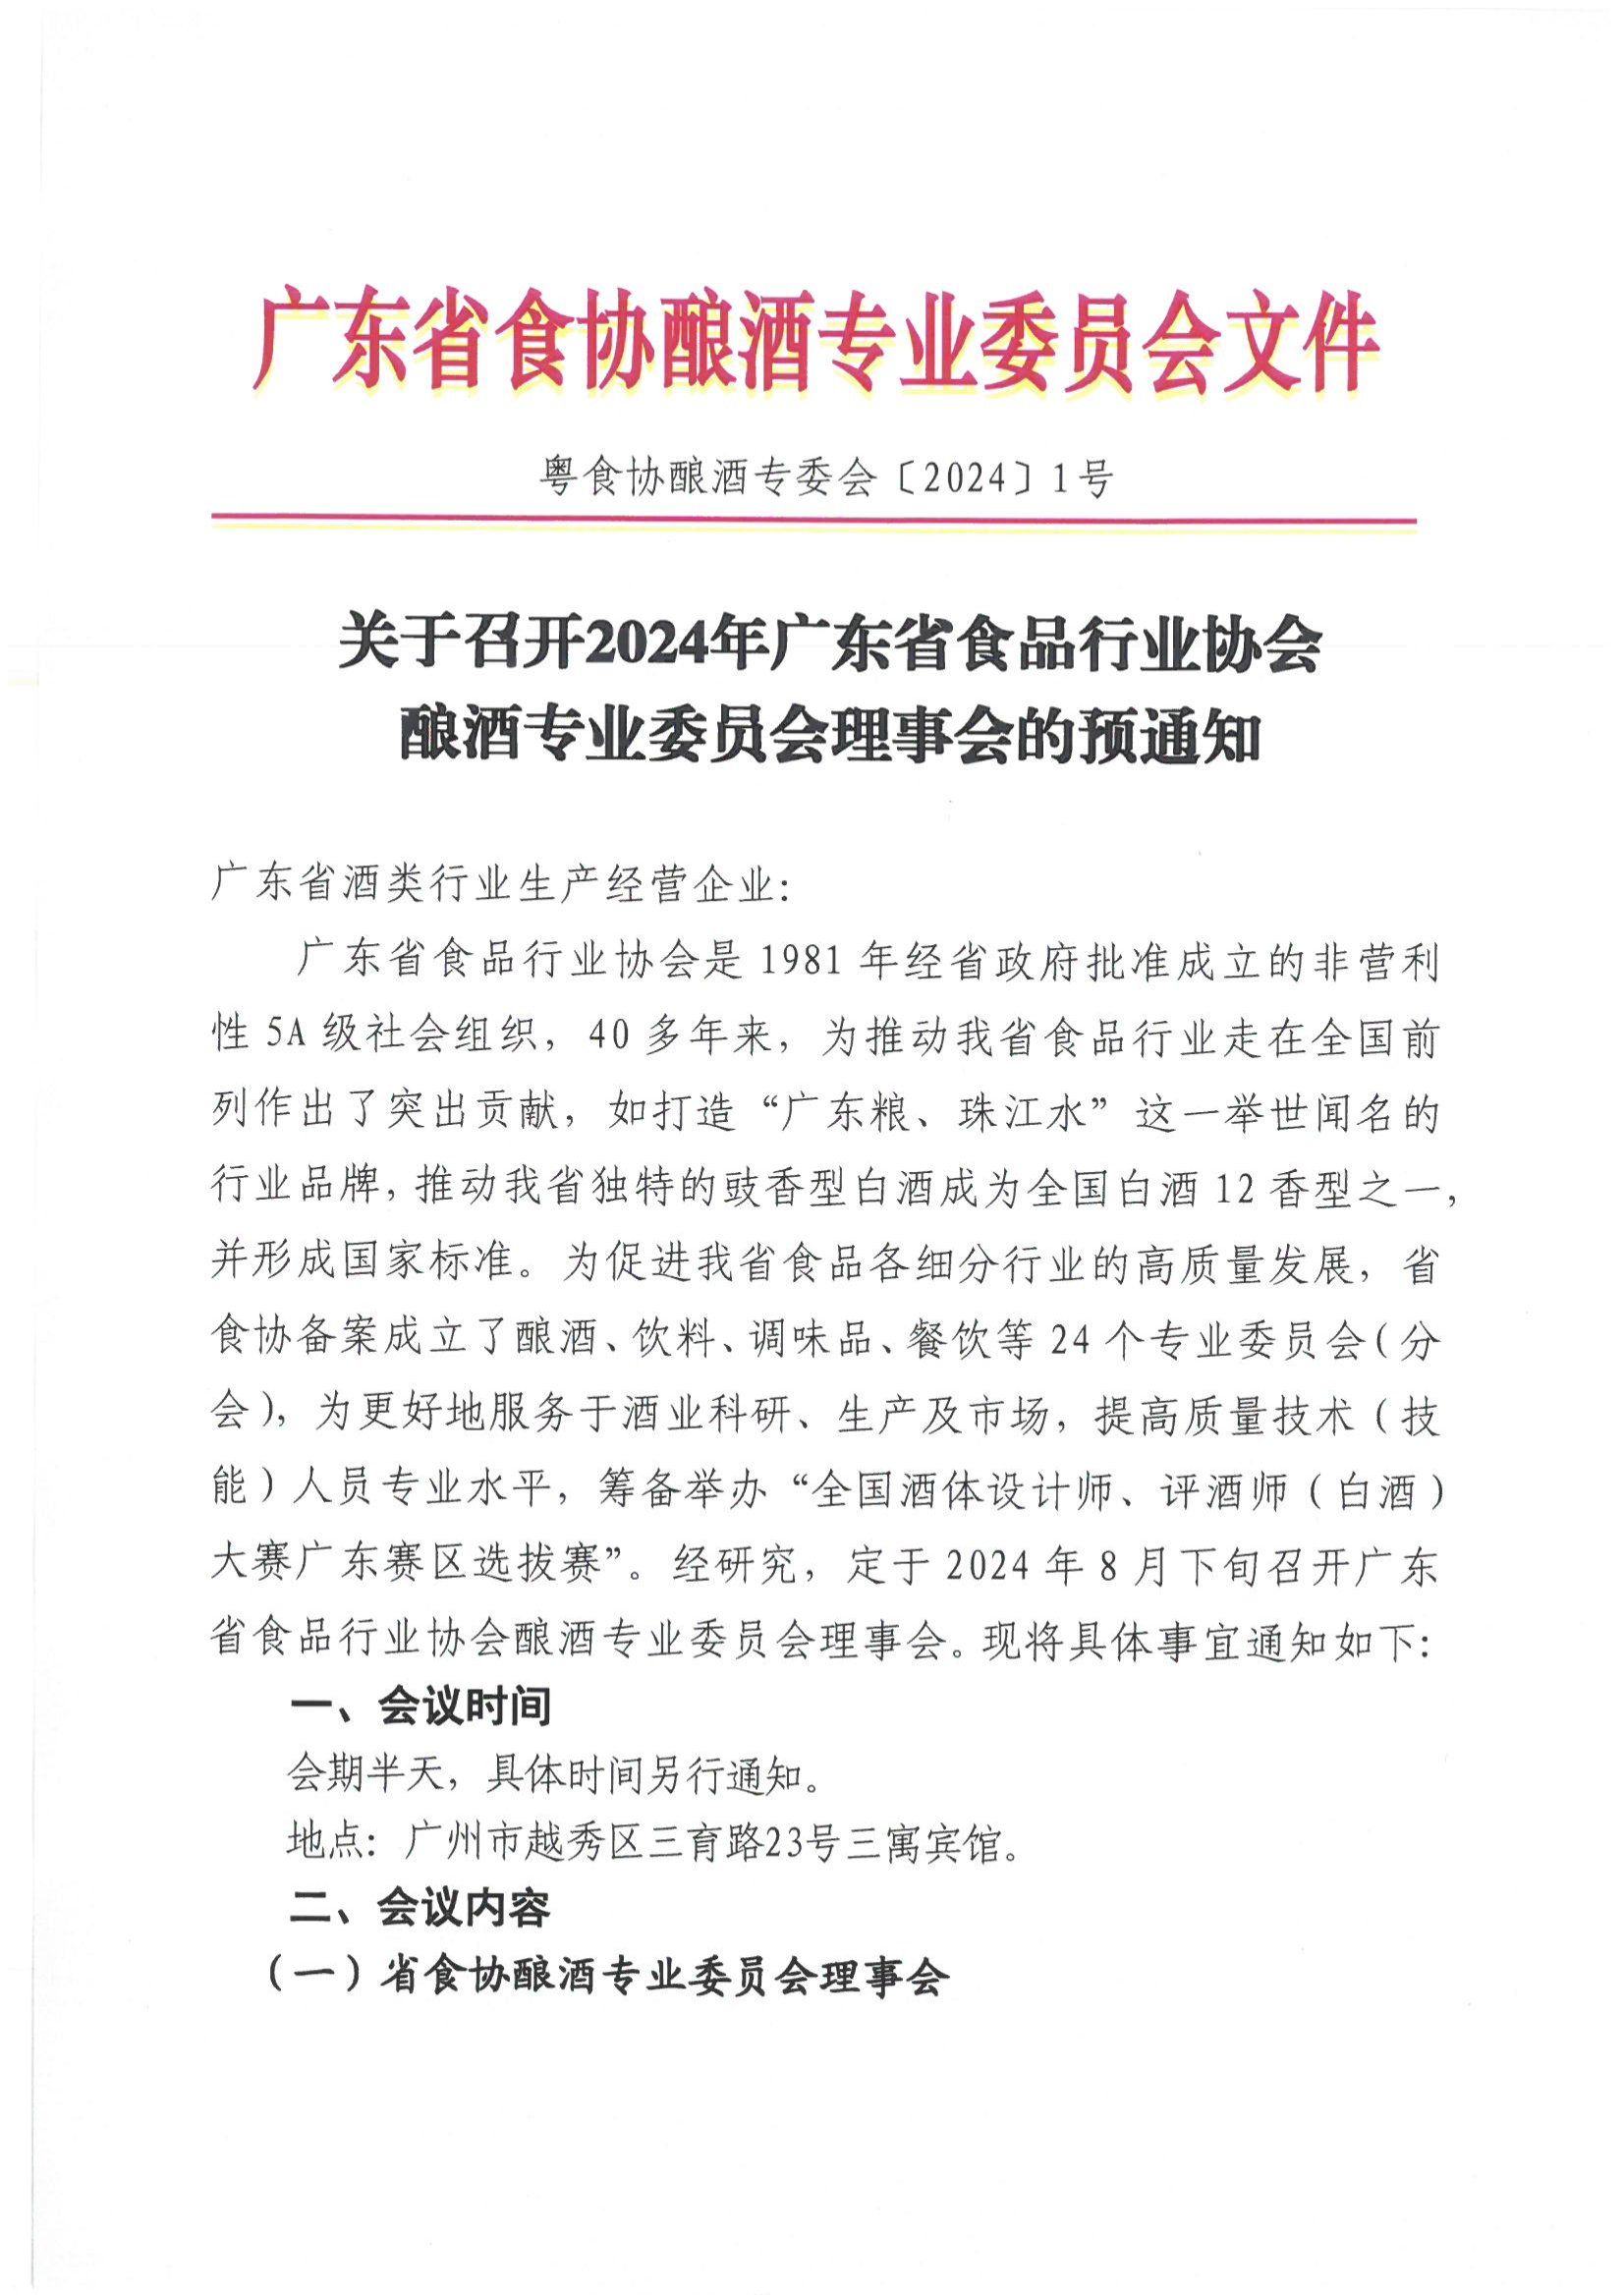 关于召开2024年广东省食品行业协会酿酒专业委员会理事会的预通知